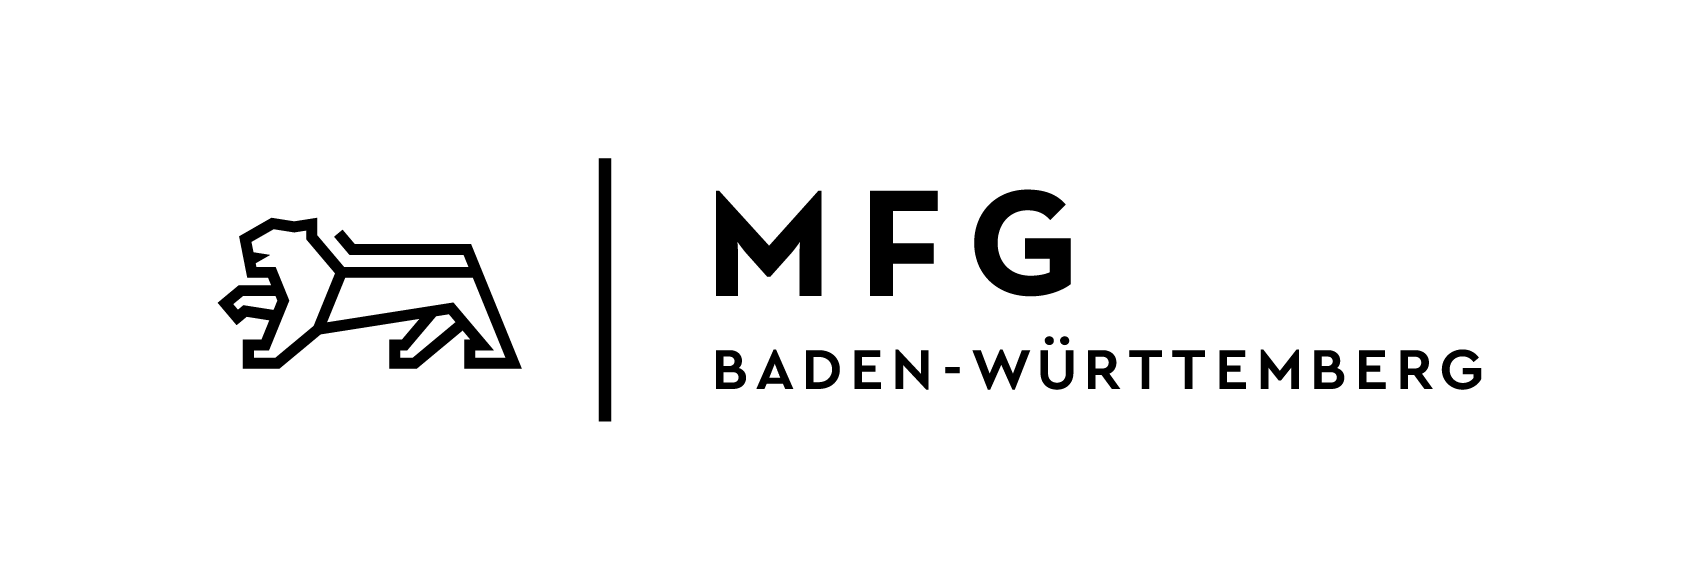 Medien- und Filmgesellschaft Baden-Württemberg